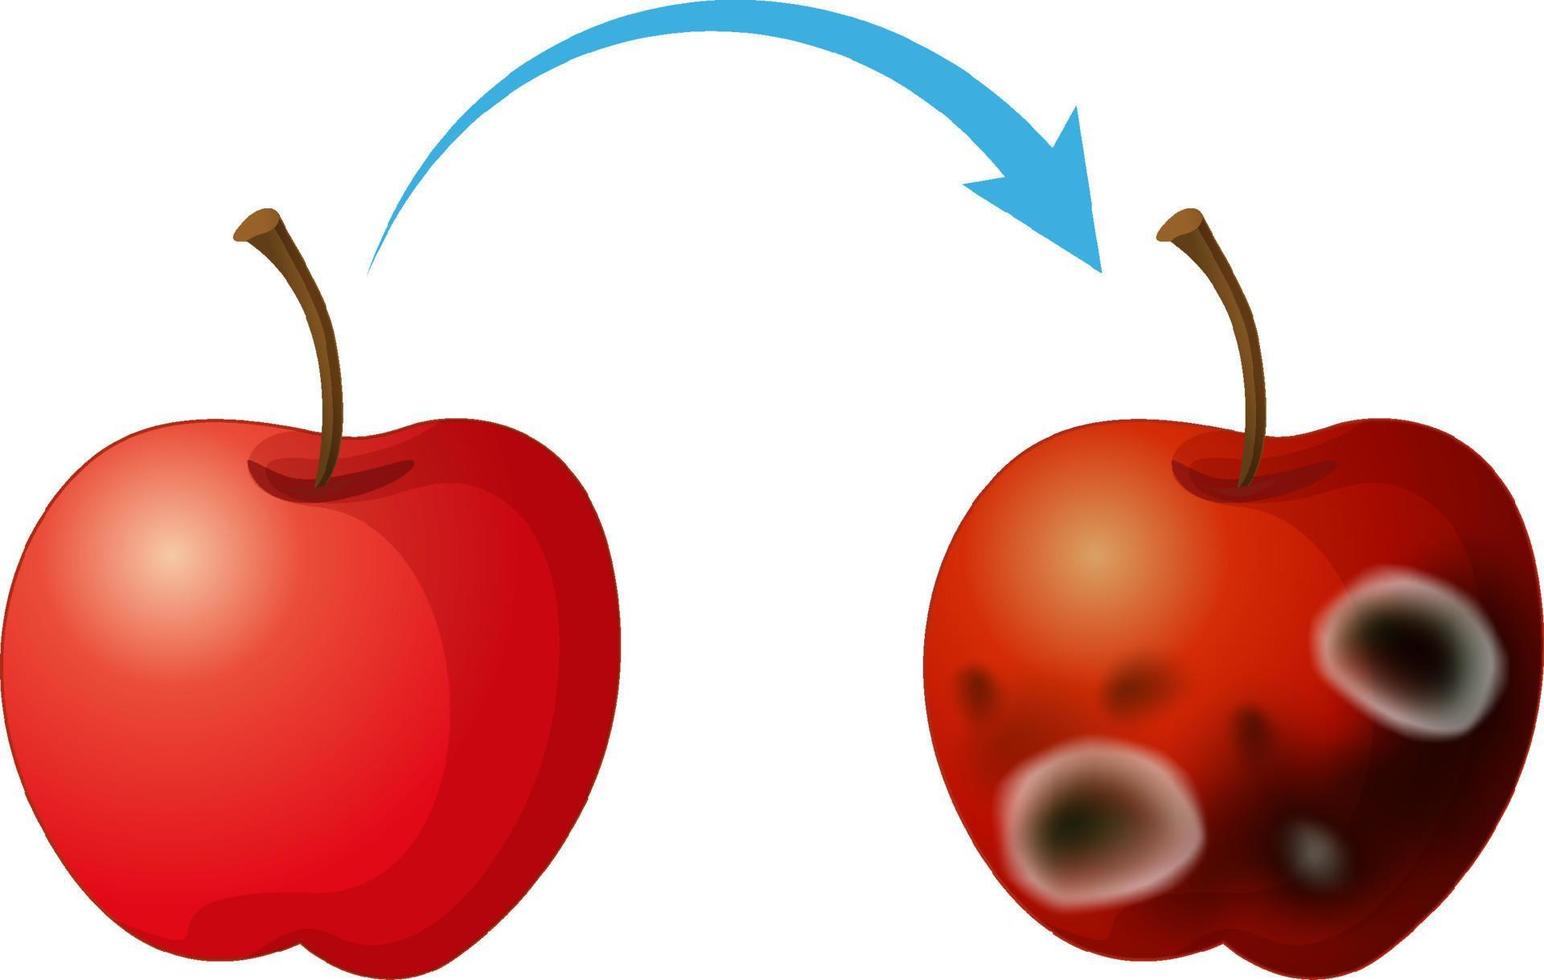 ungenießbarer zersetzter Apfel mit Schimmel vektor